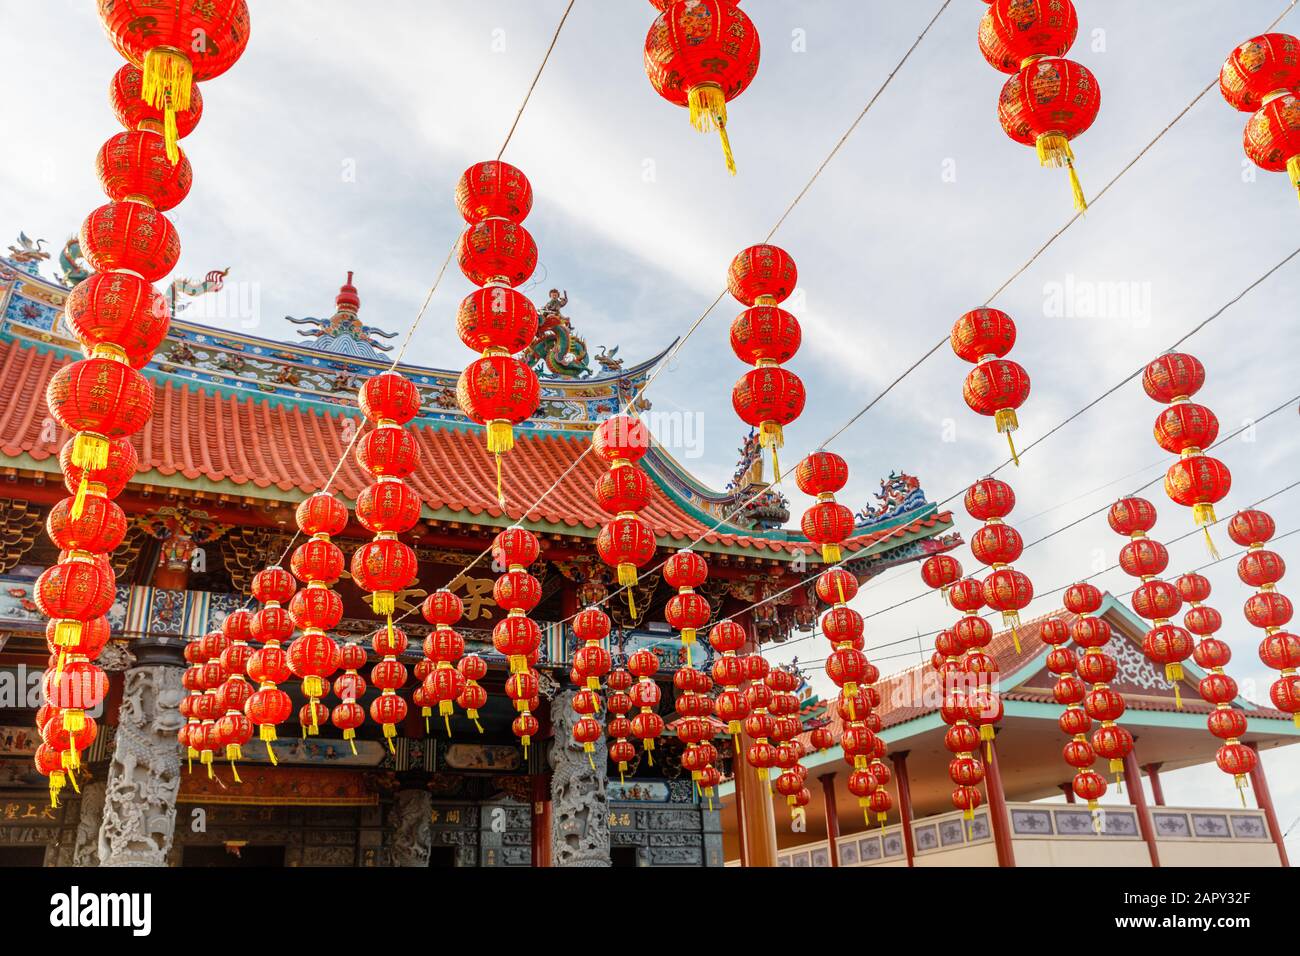 Rote Laternen für die Feier des chinesischen Lunar-Neujahrs in Vihara Satya Dharma, chinesischer buddhistischer Tempel in Benoa, Bali, Indonesien. Stockfoto